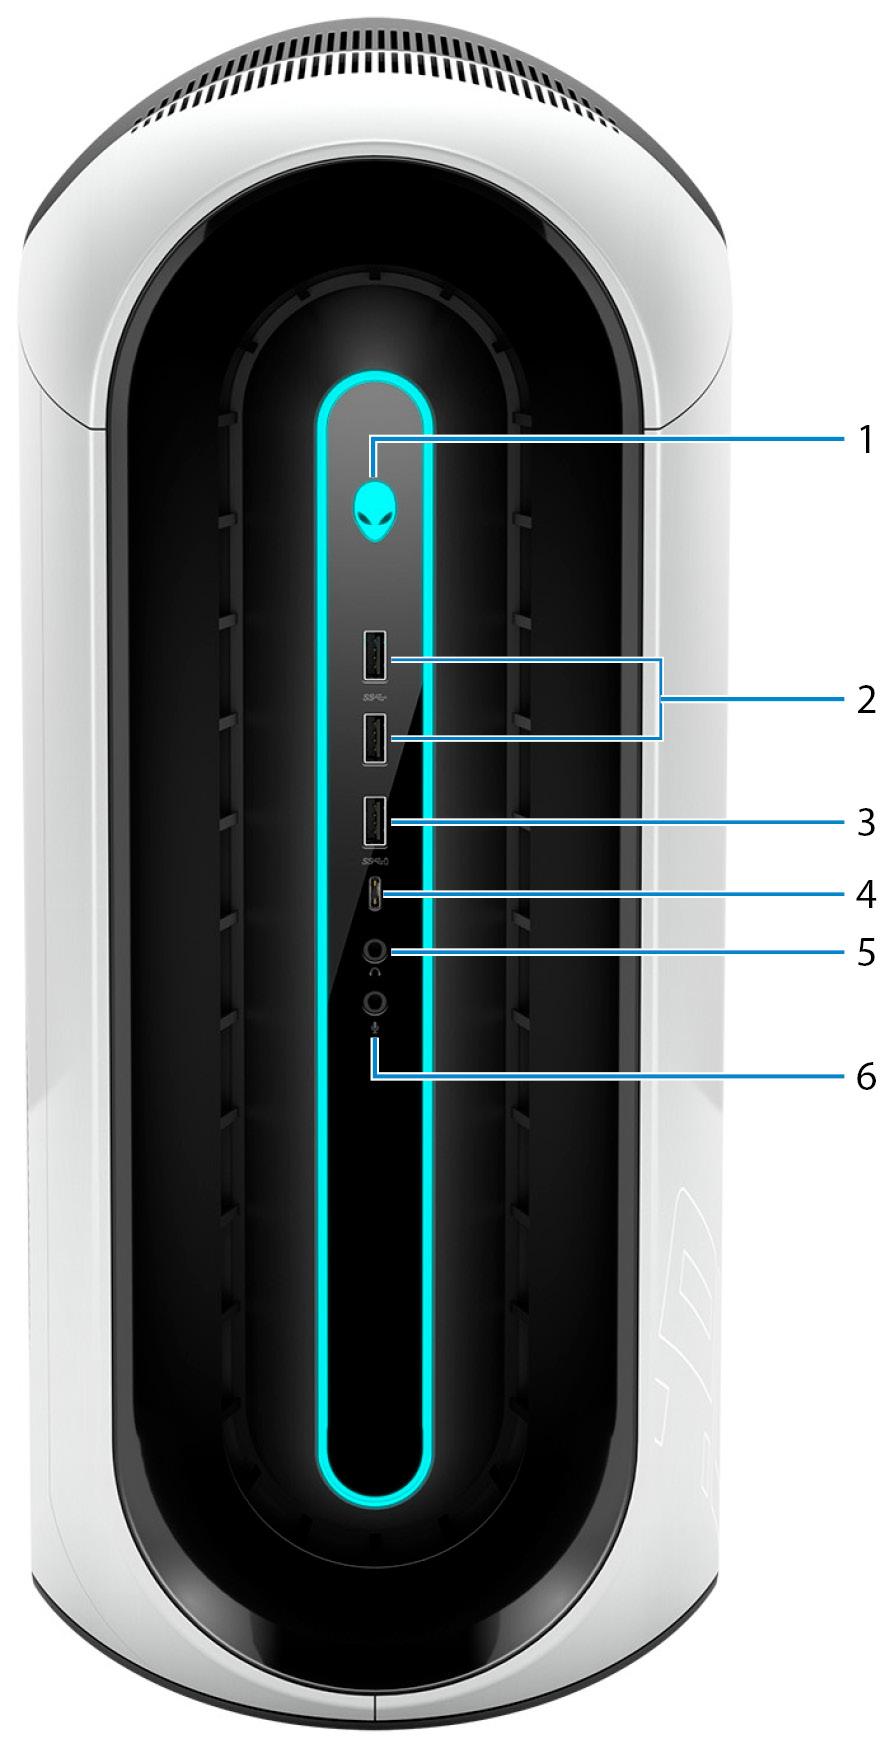 Alienware Aurora R9'nın Görünümleri 2 Ön 1. Güç düğmesi (Alienhead) Kapalıysa, uyku durumunda veya hazırda bekletme durumundaysa bilgisayarı açmak için basın.